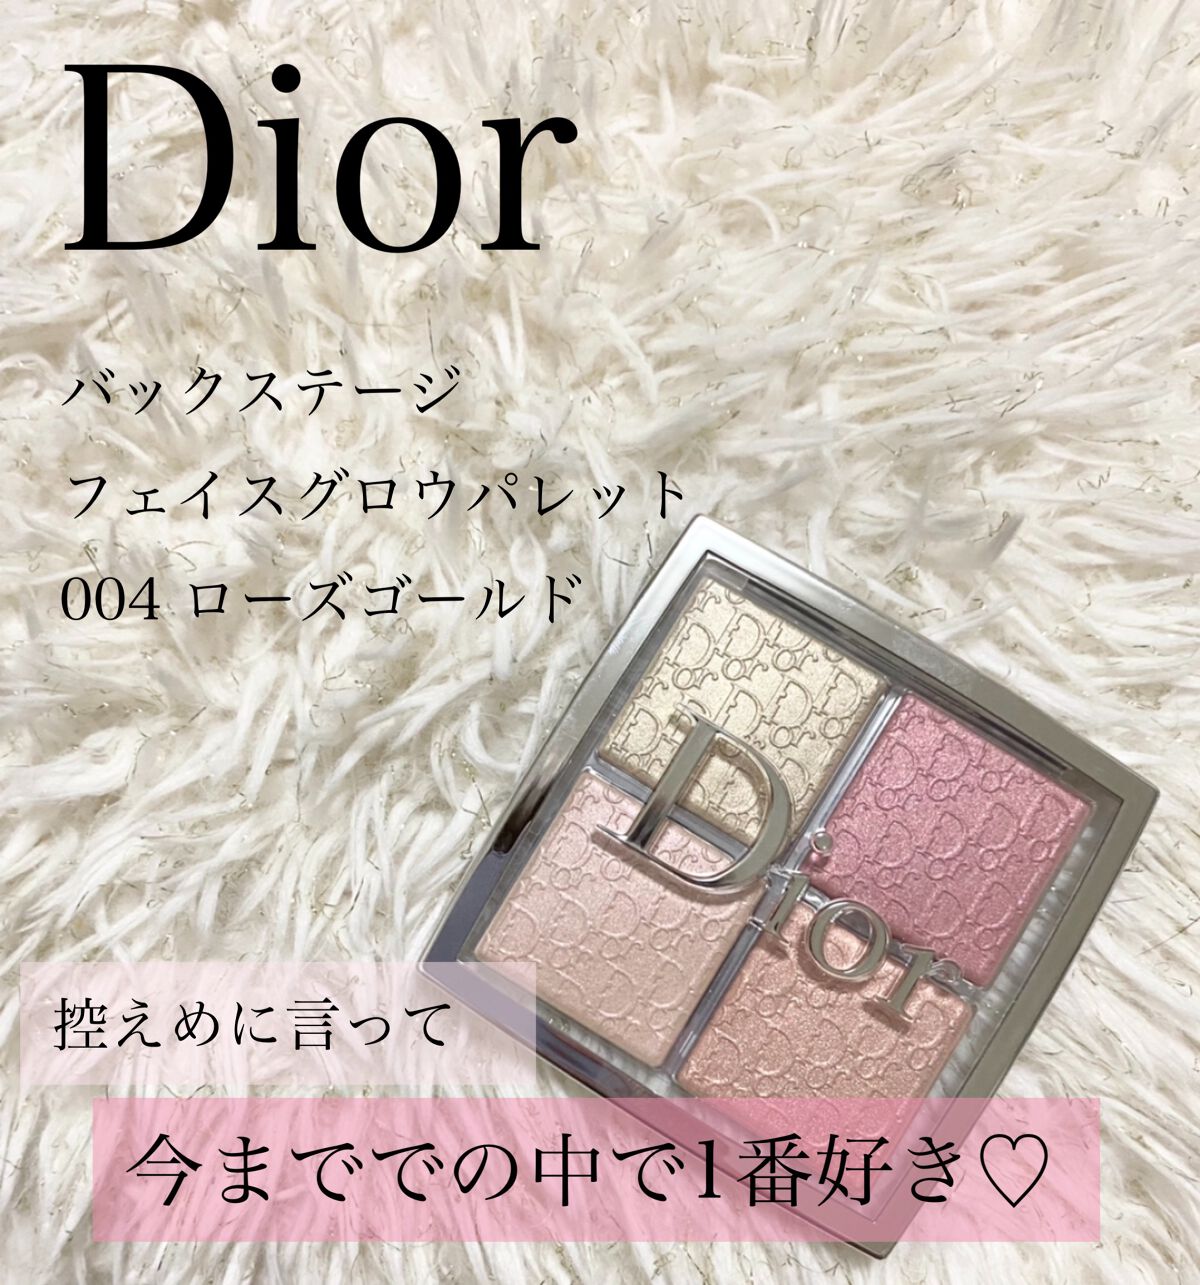 Dior バックステージ フェイスグロウ パレット 004 ローズゴールド